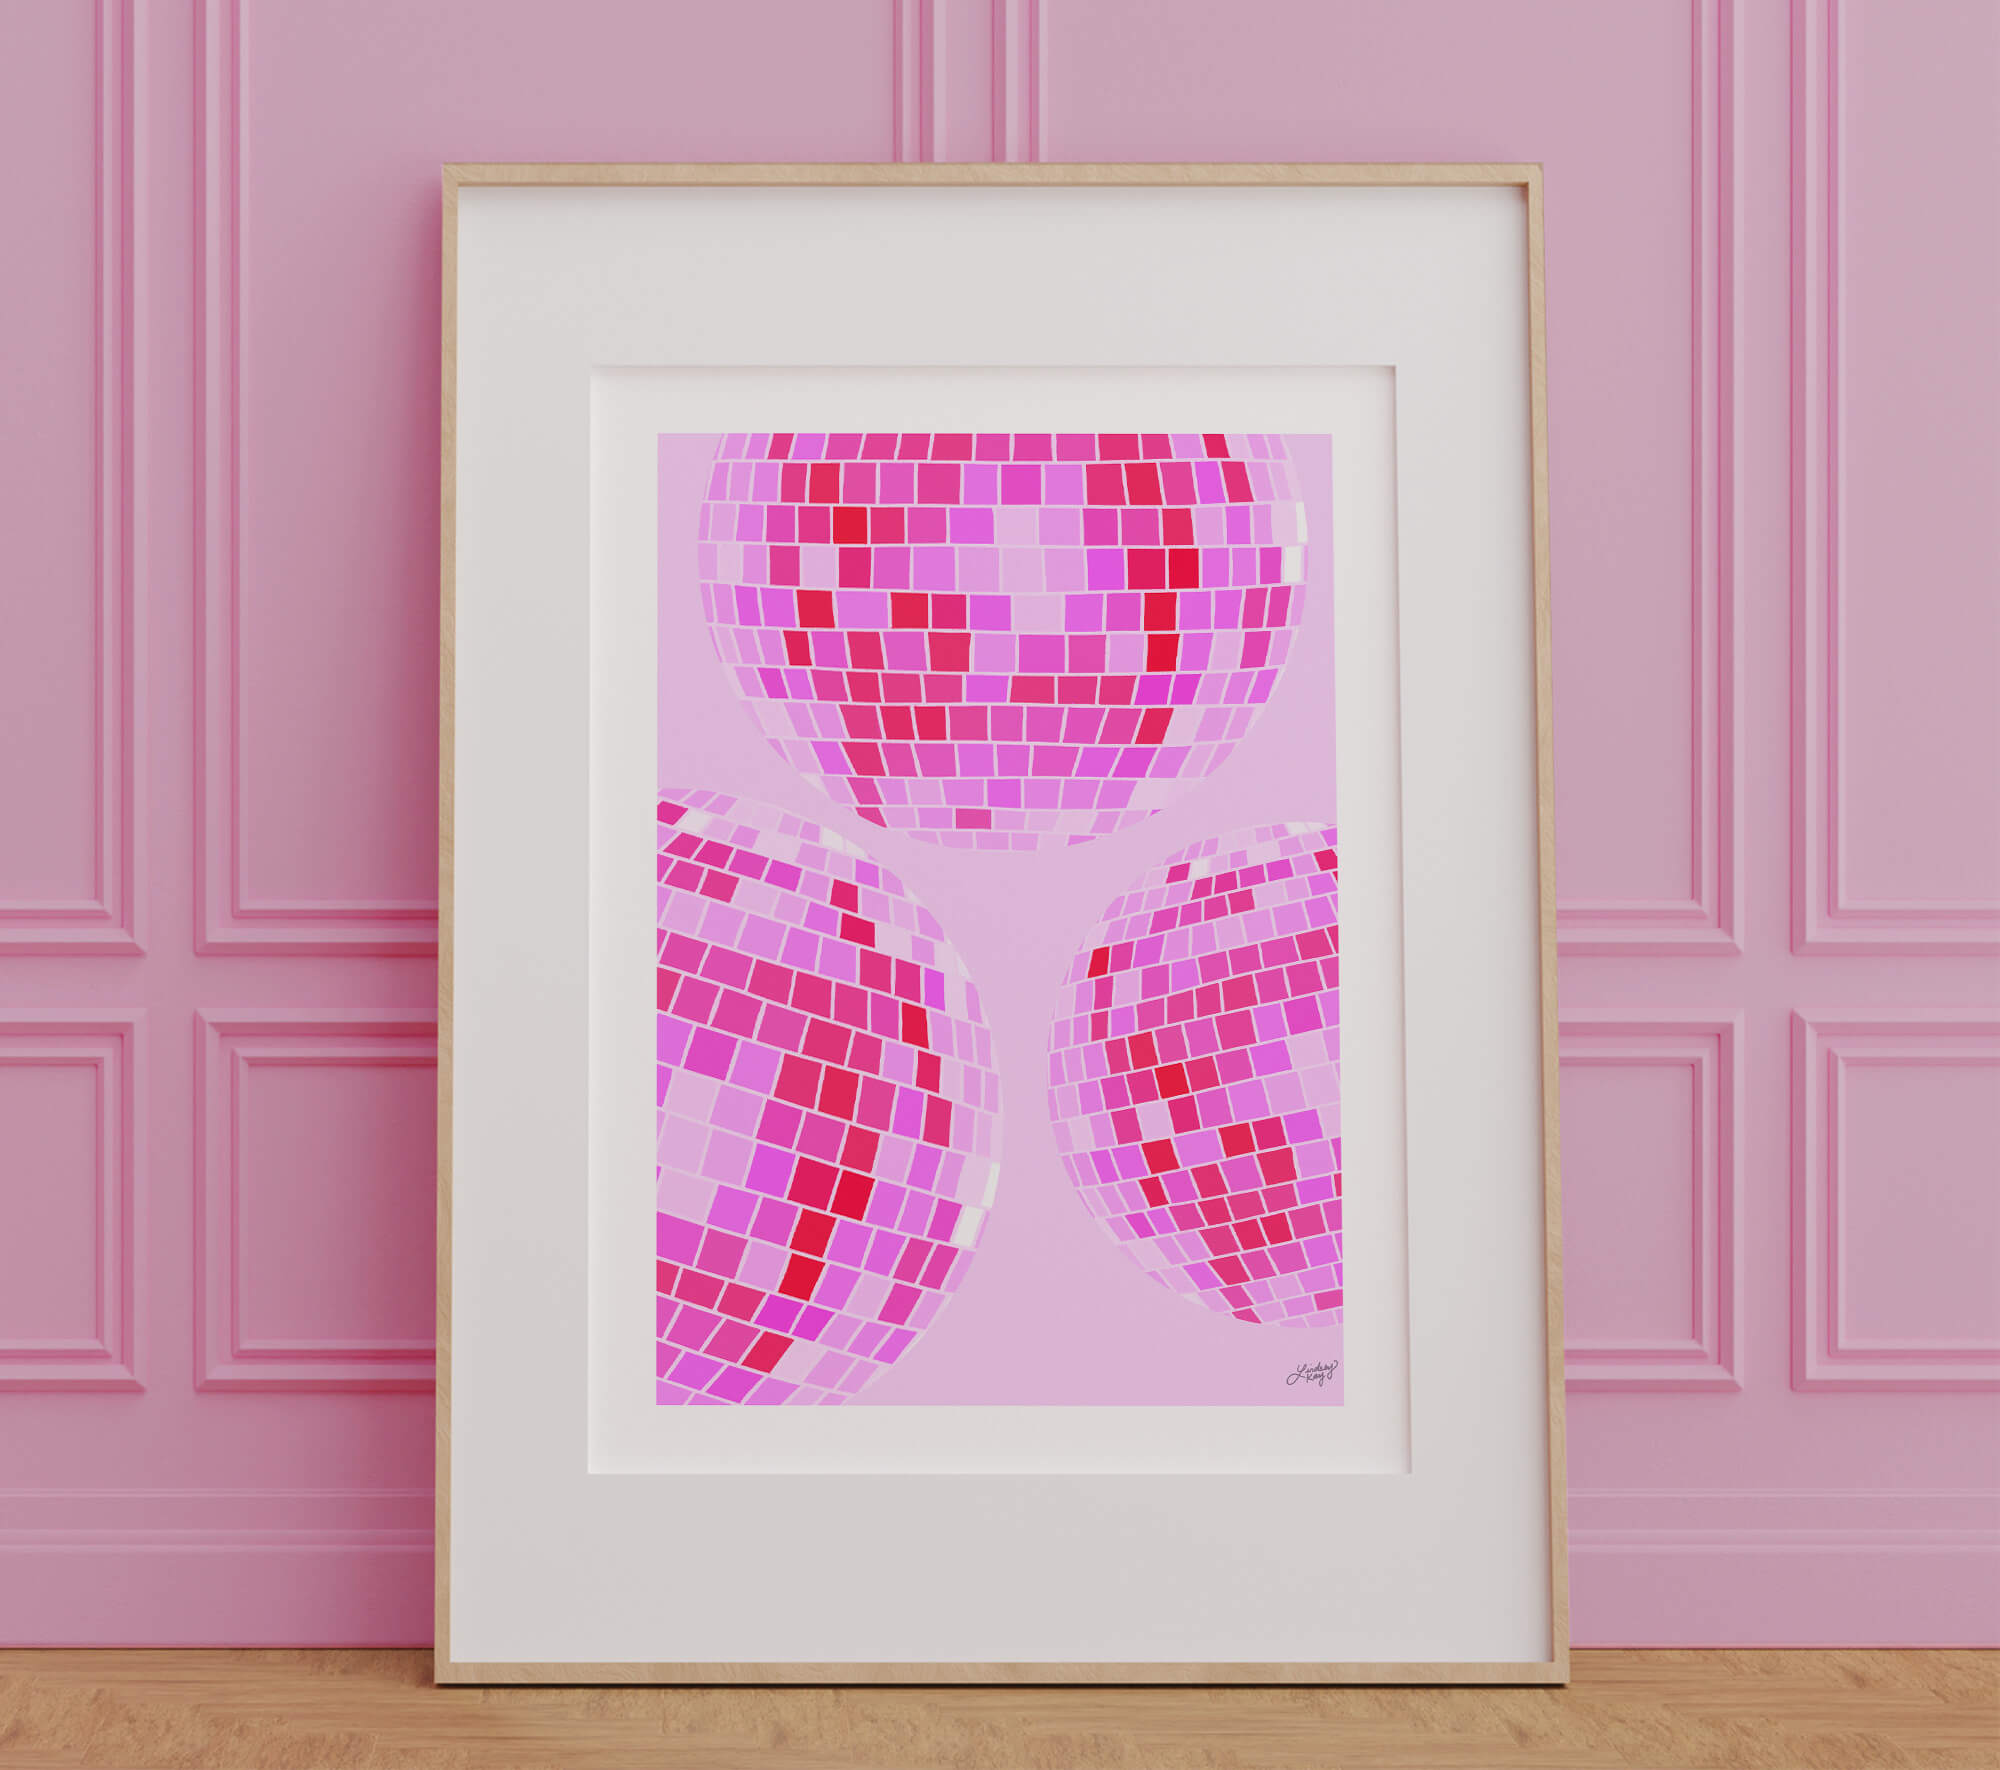 Ilustración de bola de discoteca (paleta rosa) - Impresión de arte